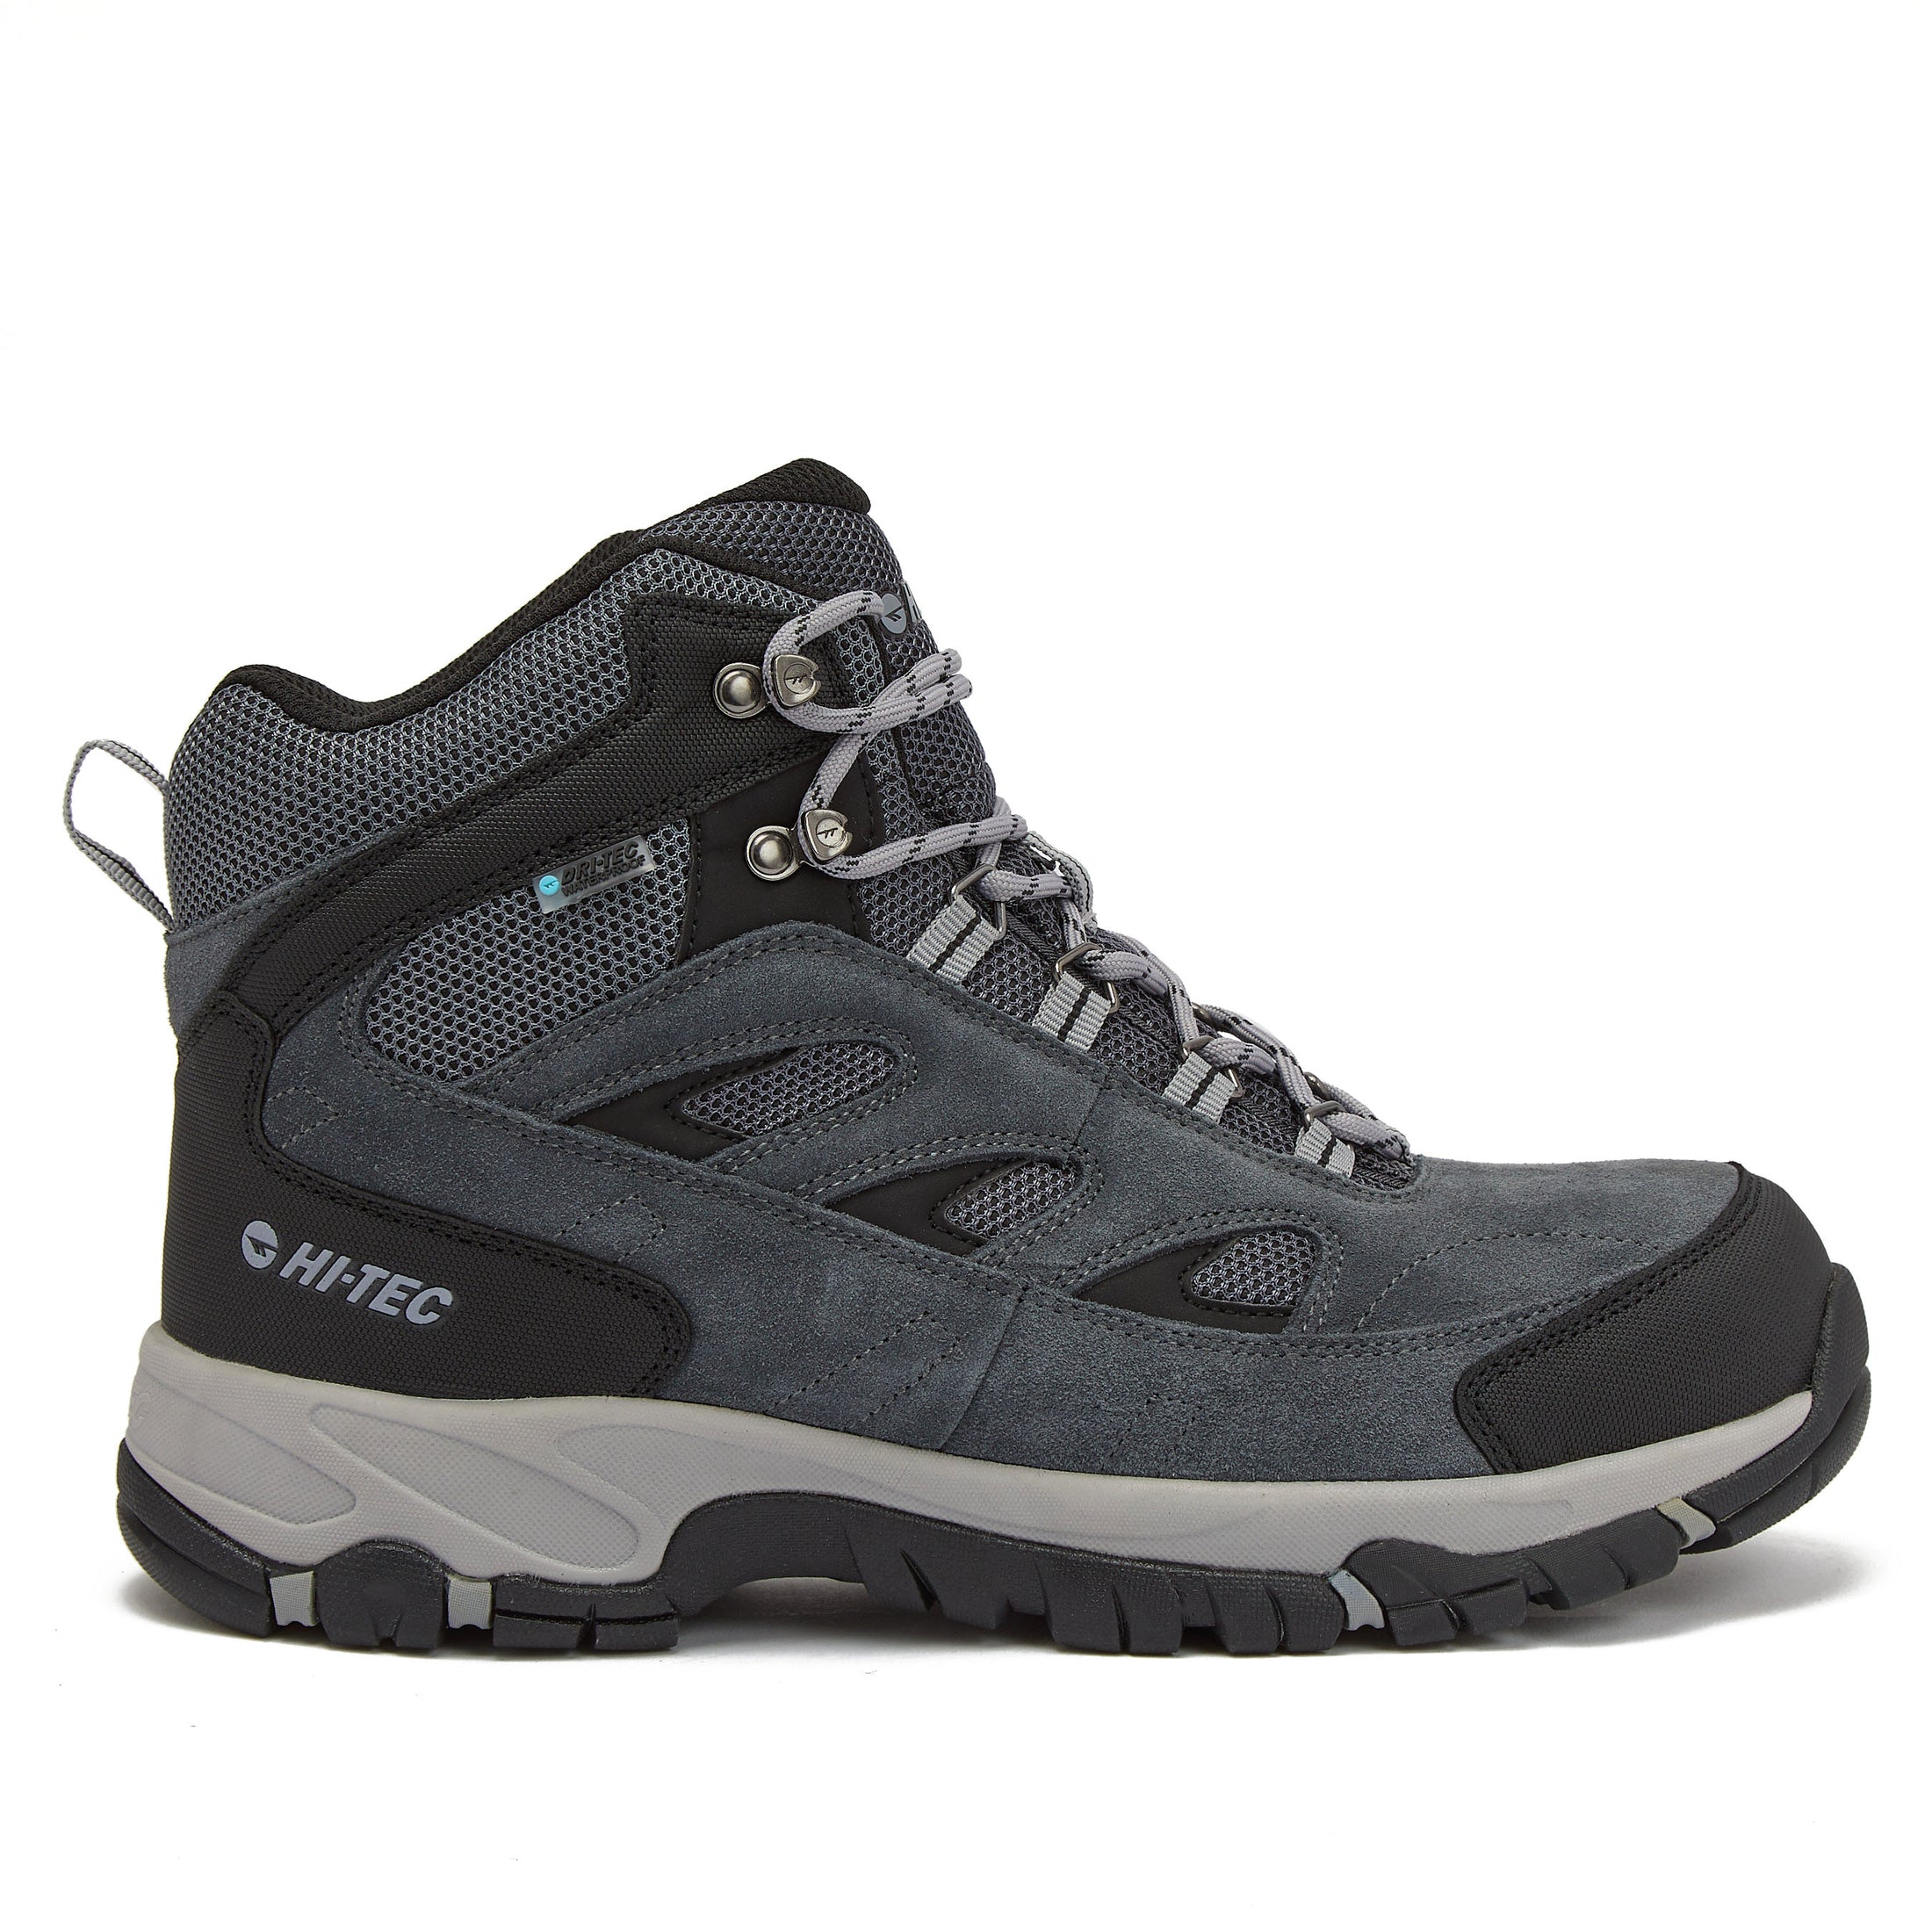 Hi-Tec Hiking Boots & Trail Shoes for Men and Women – Hi-Tec.com